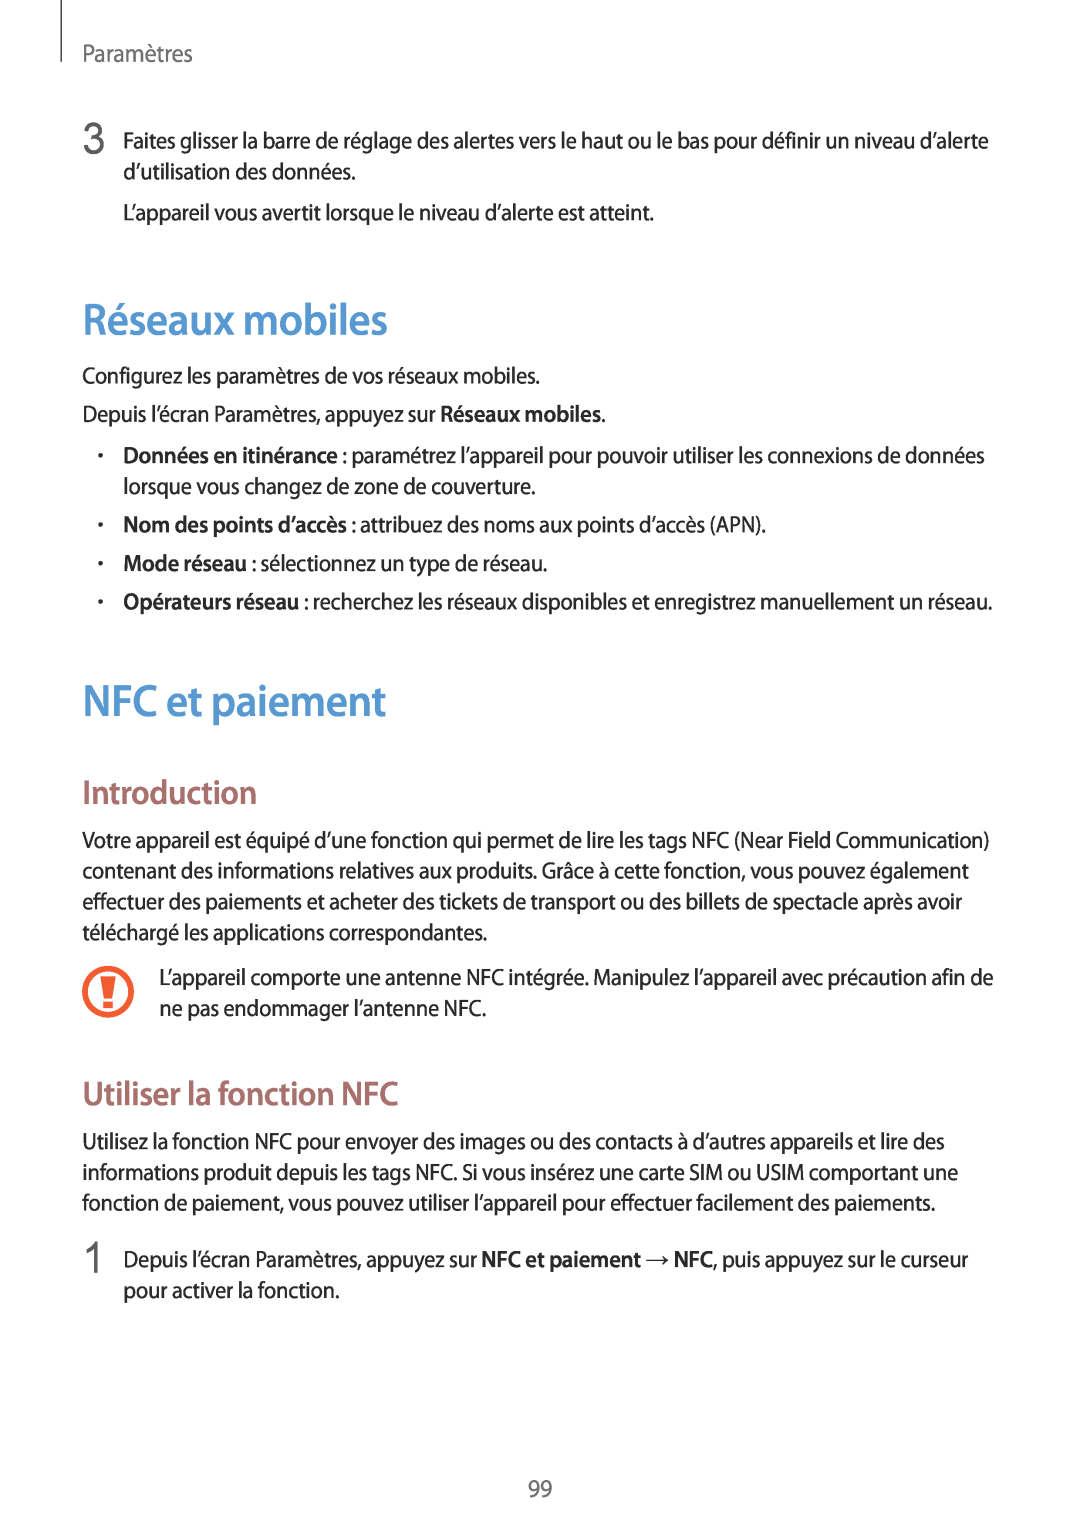 Samsung SM-G920FZDAXEF manual Réseaux mobiles, NFC et paiement, Utiliser la fonction NFC, Introduction, Paramètres 